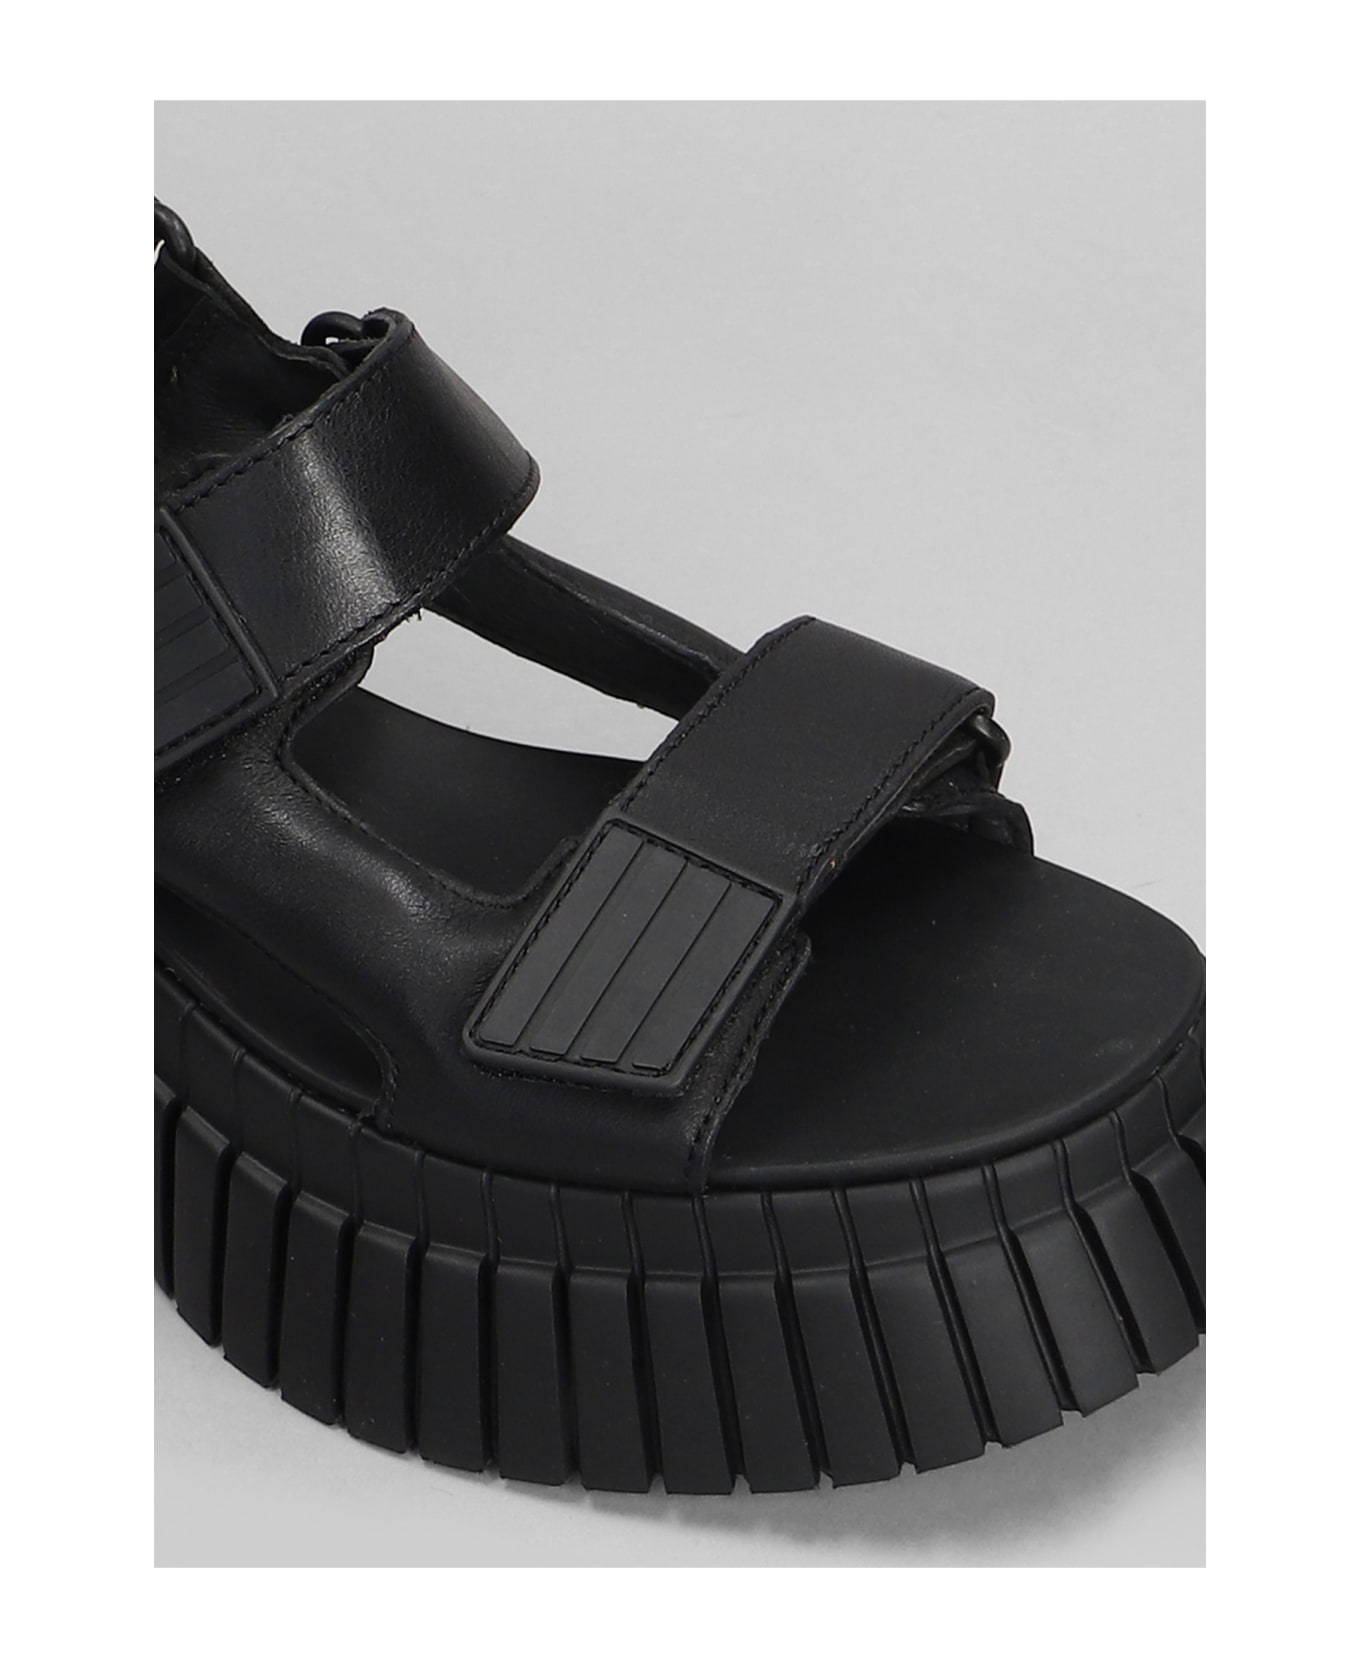 Camper Bcn Sandals In Black Leather - black